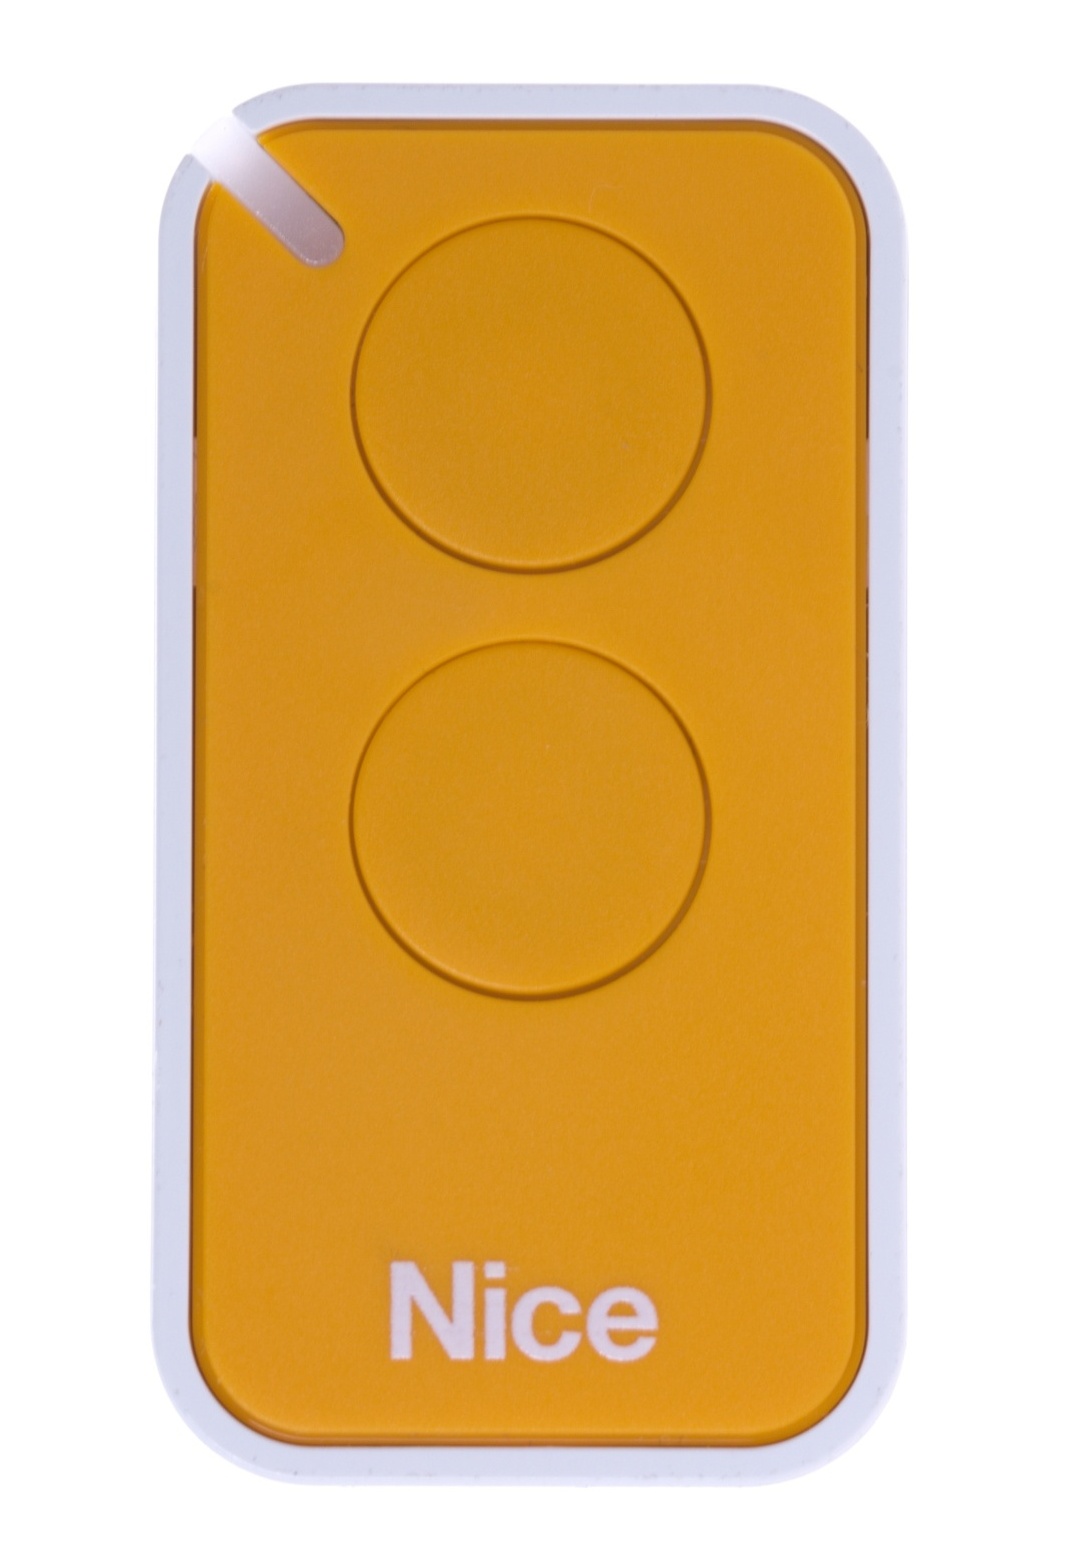 Dálkový ovladač Nice INTI-2Y, dvoukanálový, žlutý, Nice ERA INTI